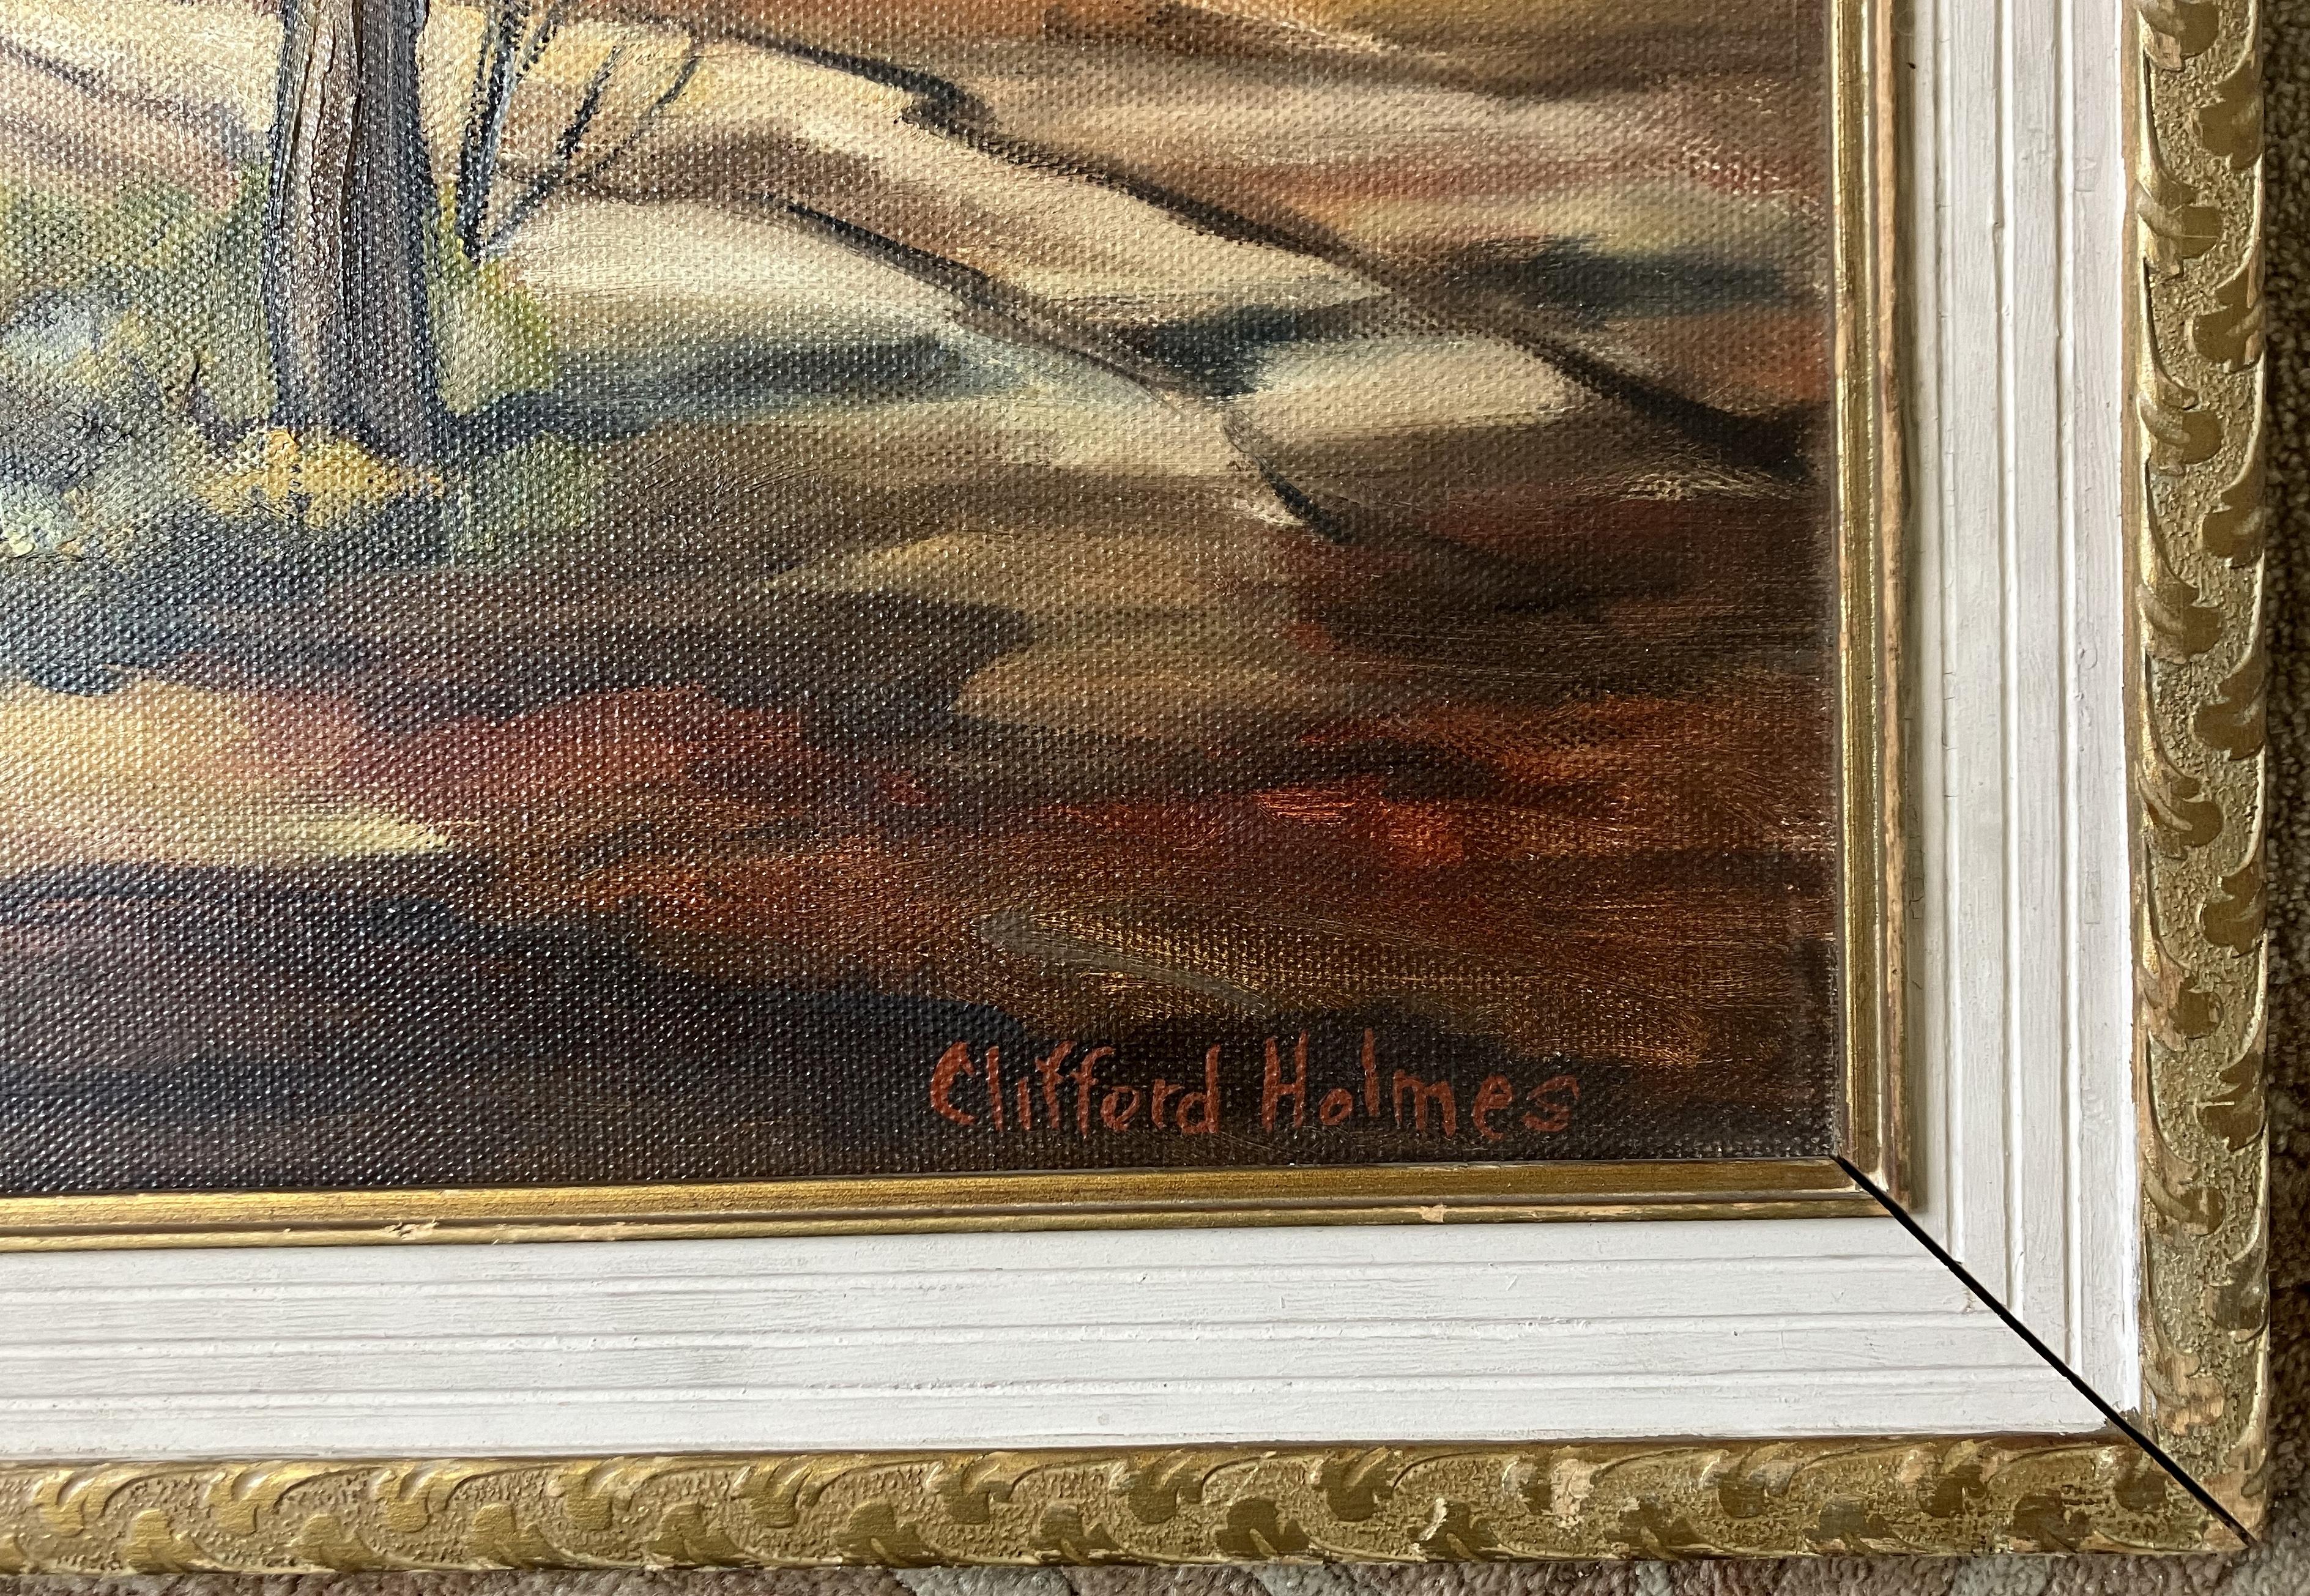 Bundalloch, Highlands écossais - Painting de Clifford Holmes